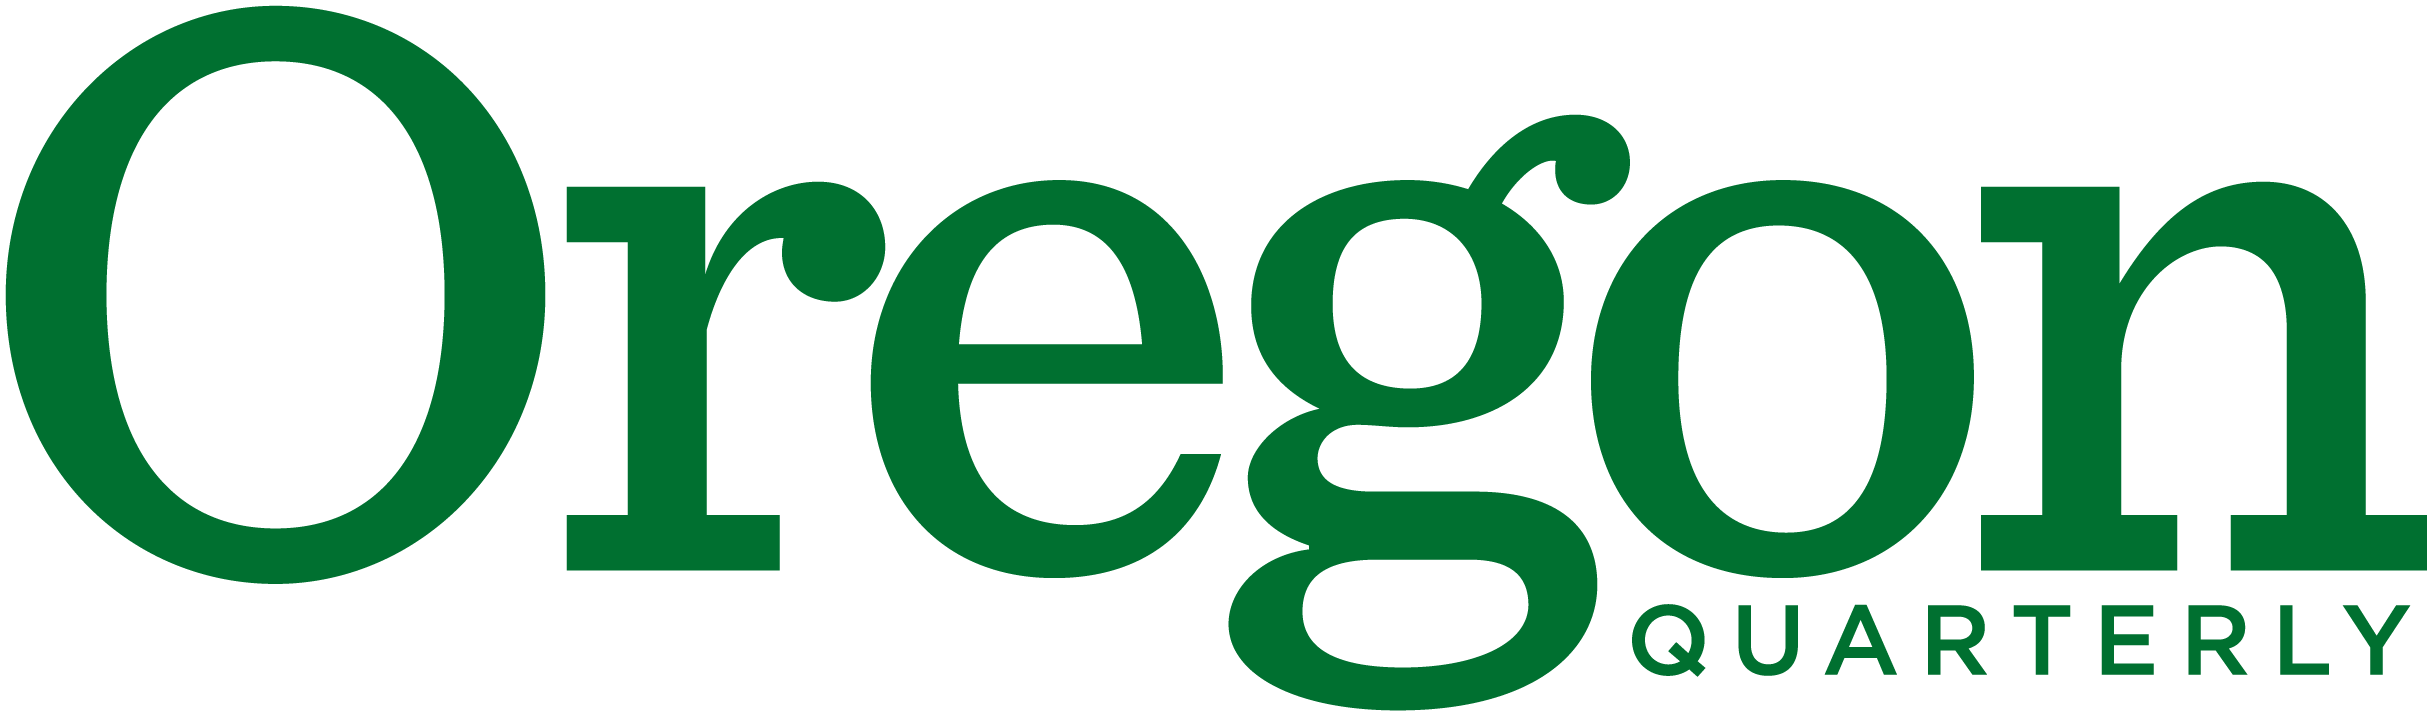 Oregon Quarterly logo